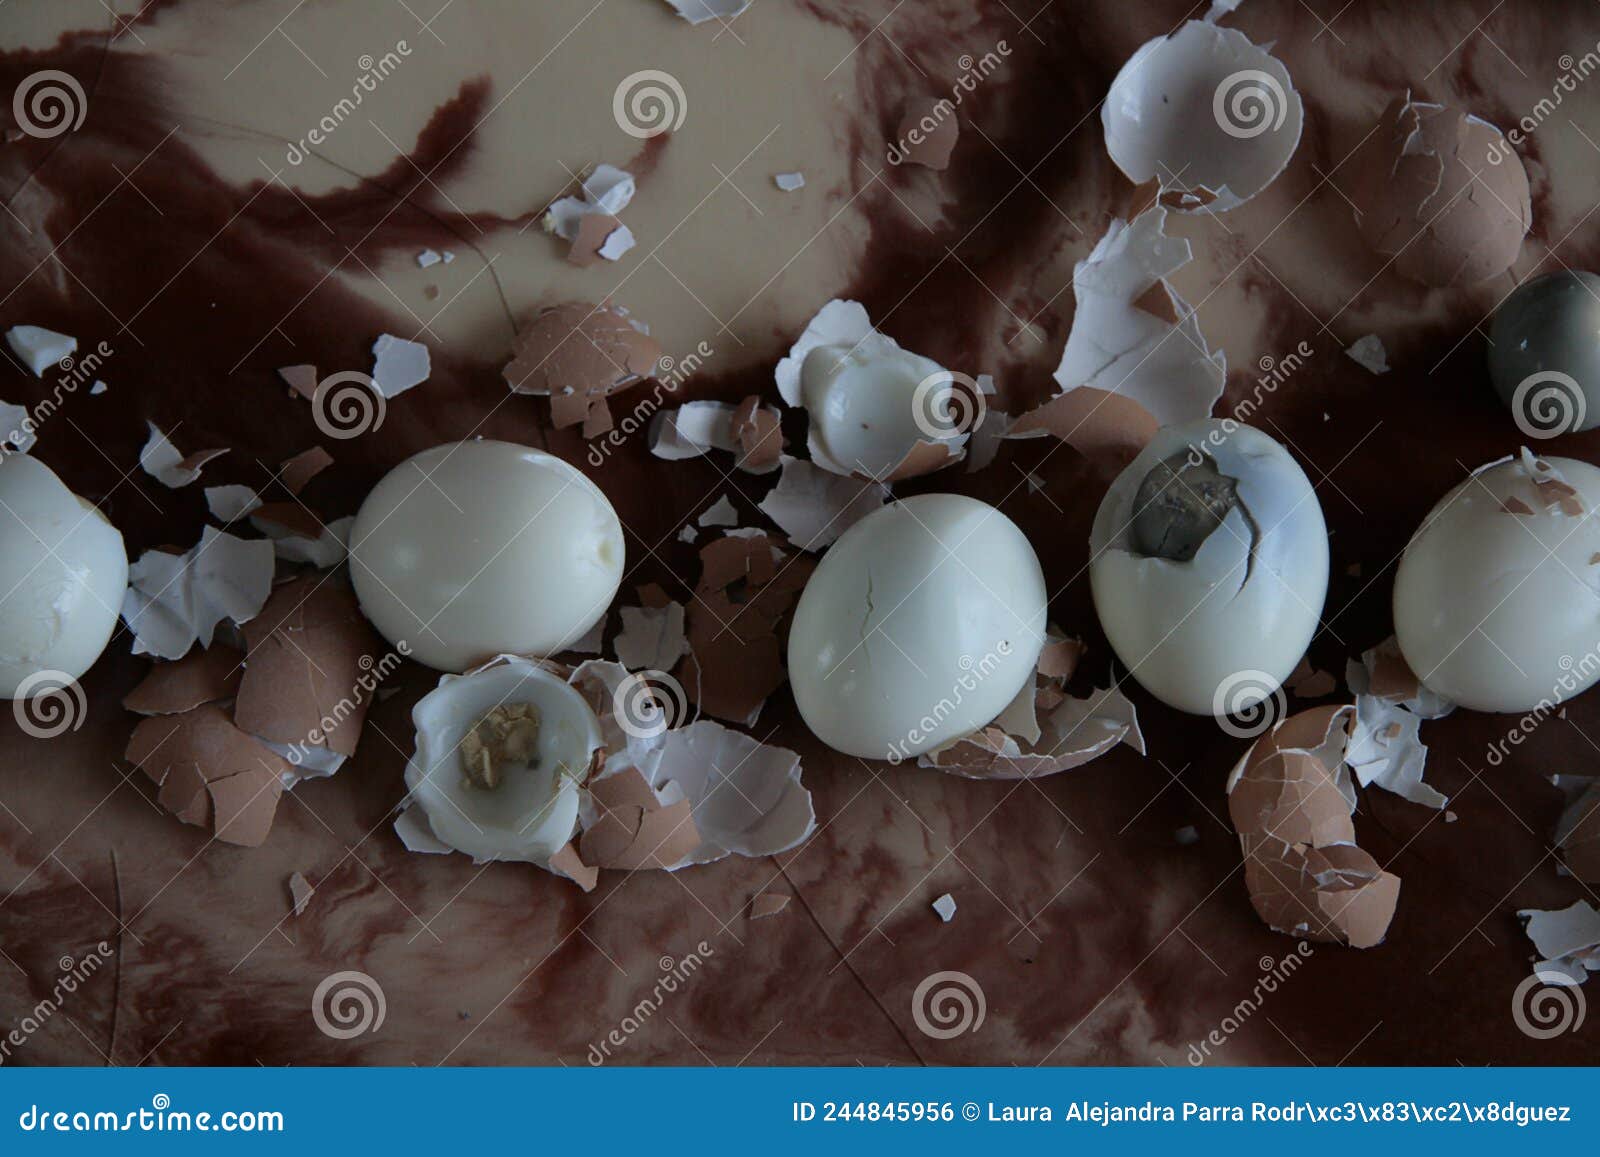 boiled and broken eggs on the counter huevos hervidos y rotos en la encimera